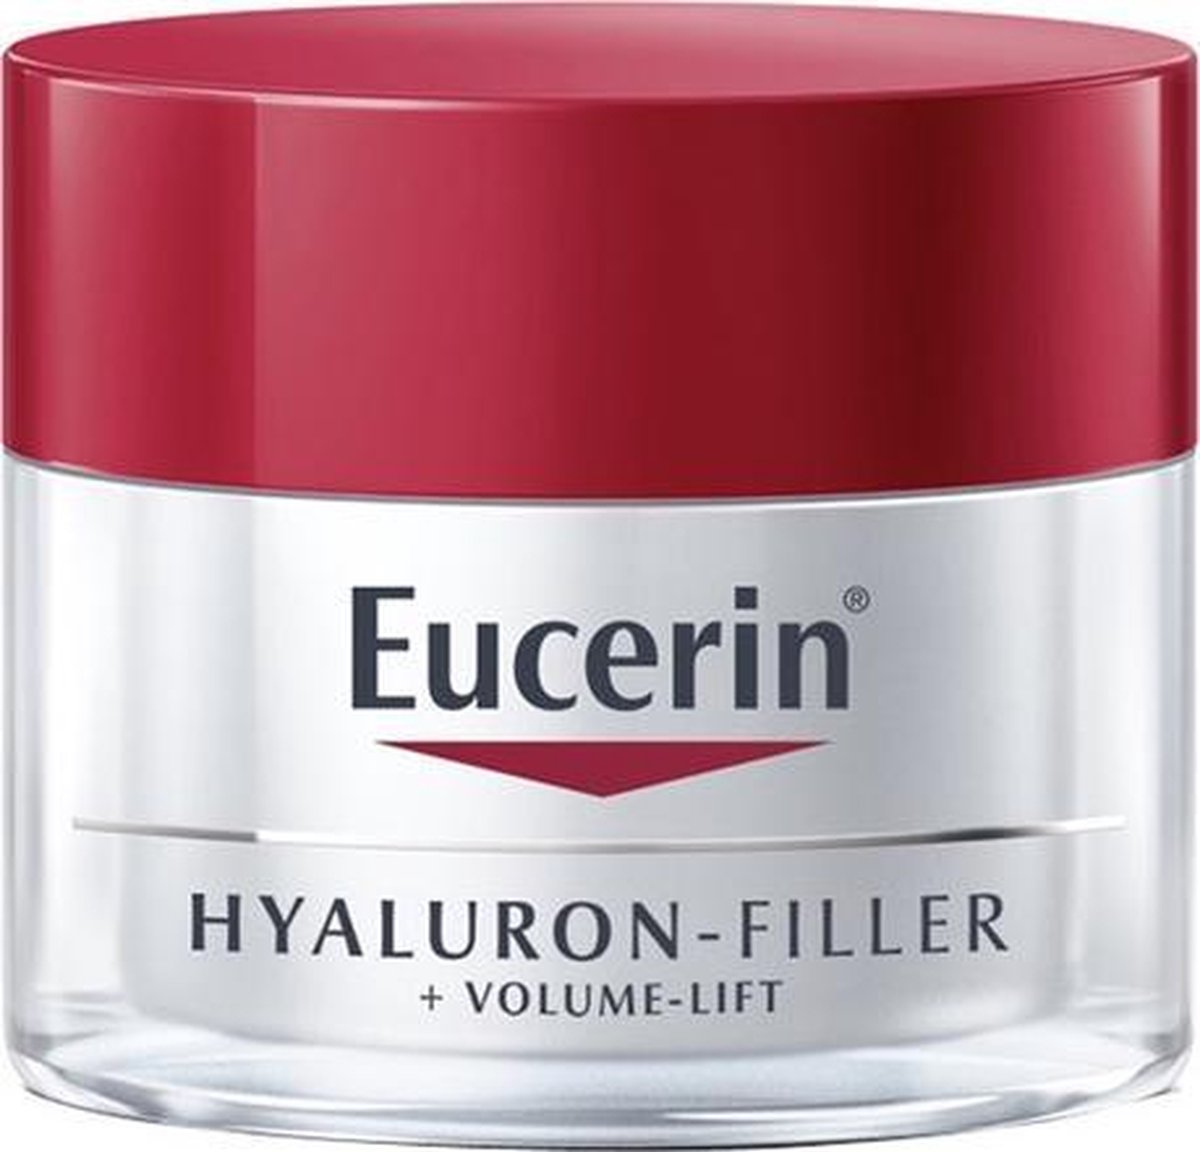 Eucerin Hyaluron Filler + Volume-lift Día Piel Normal Mixta 50 Ml